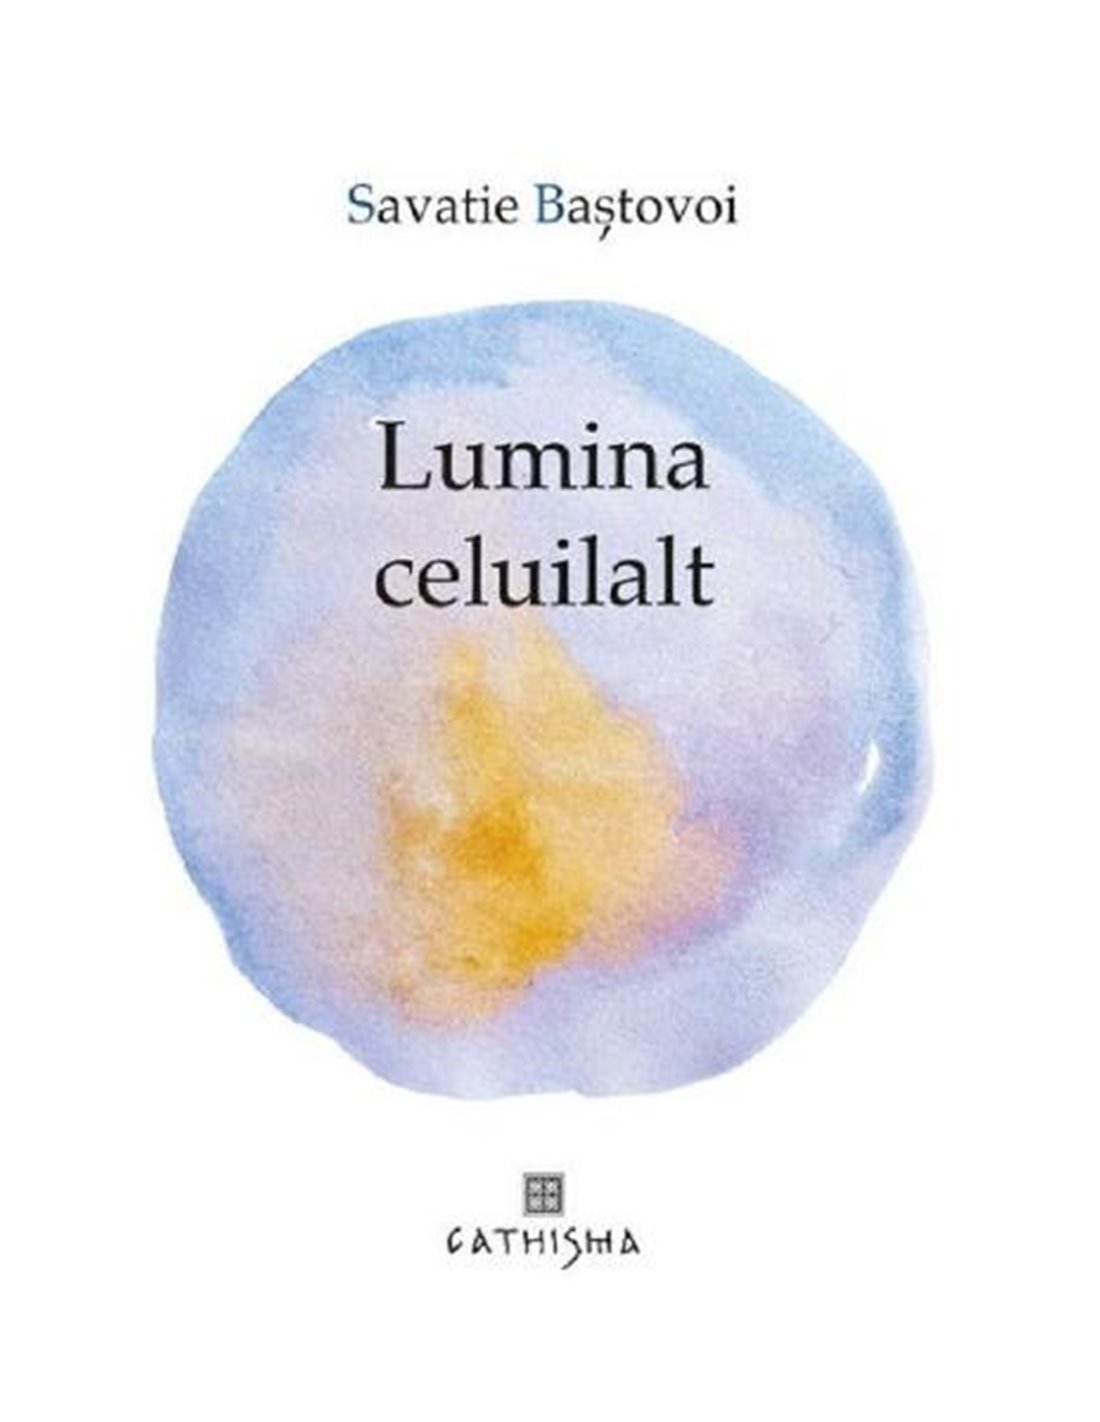 Lumina celuilalt - Savatie Bastovoi | Editura Cathisma